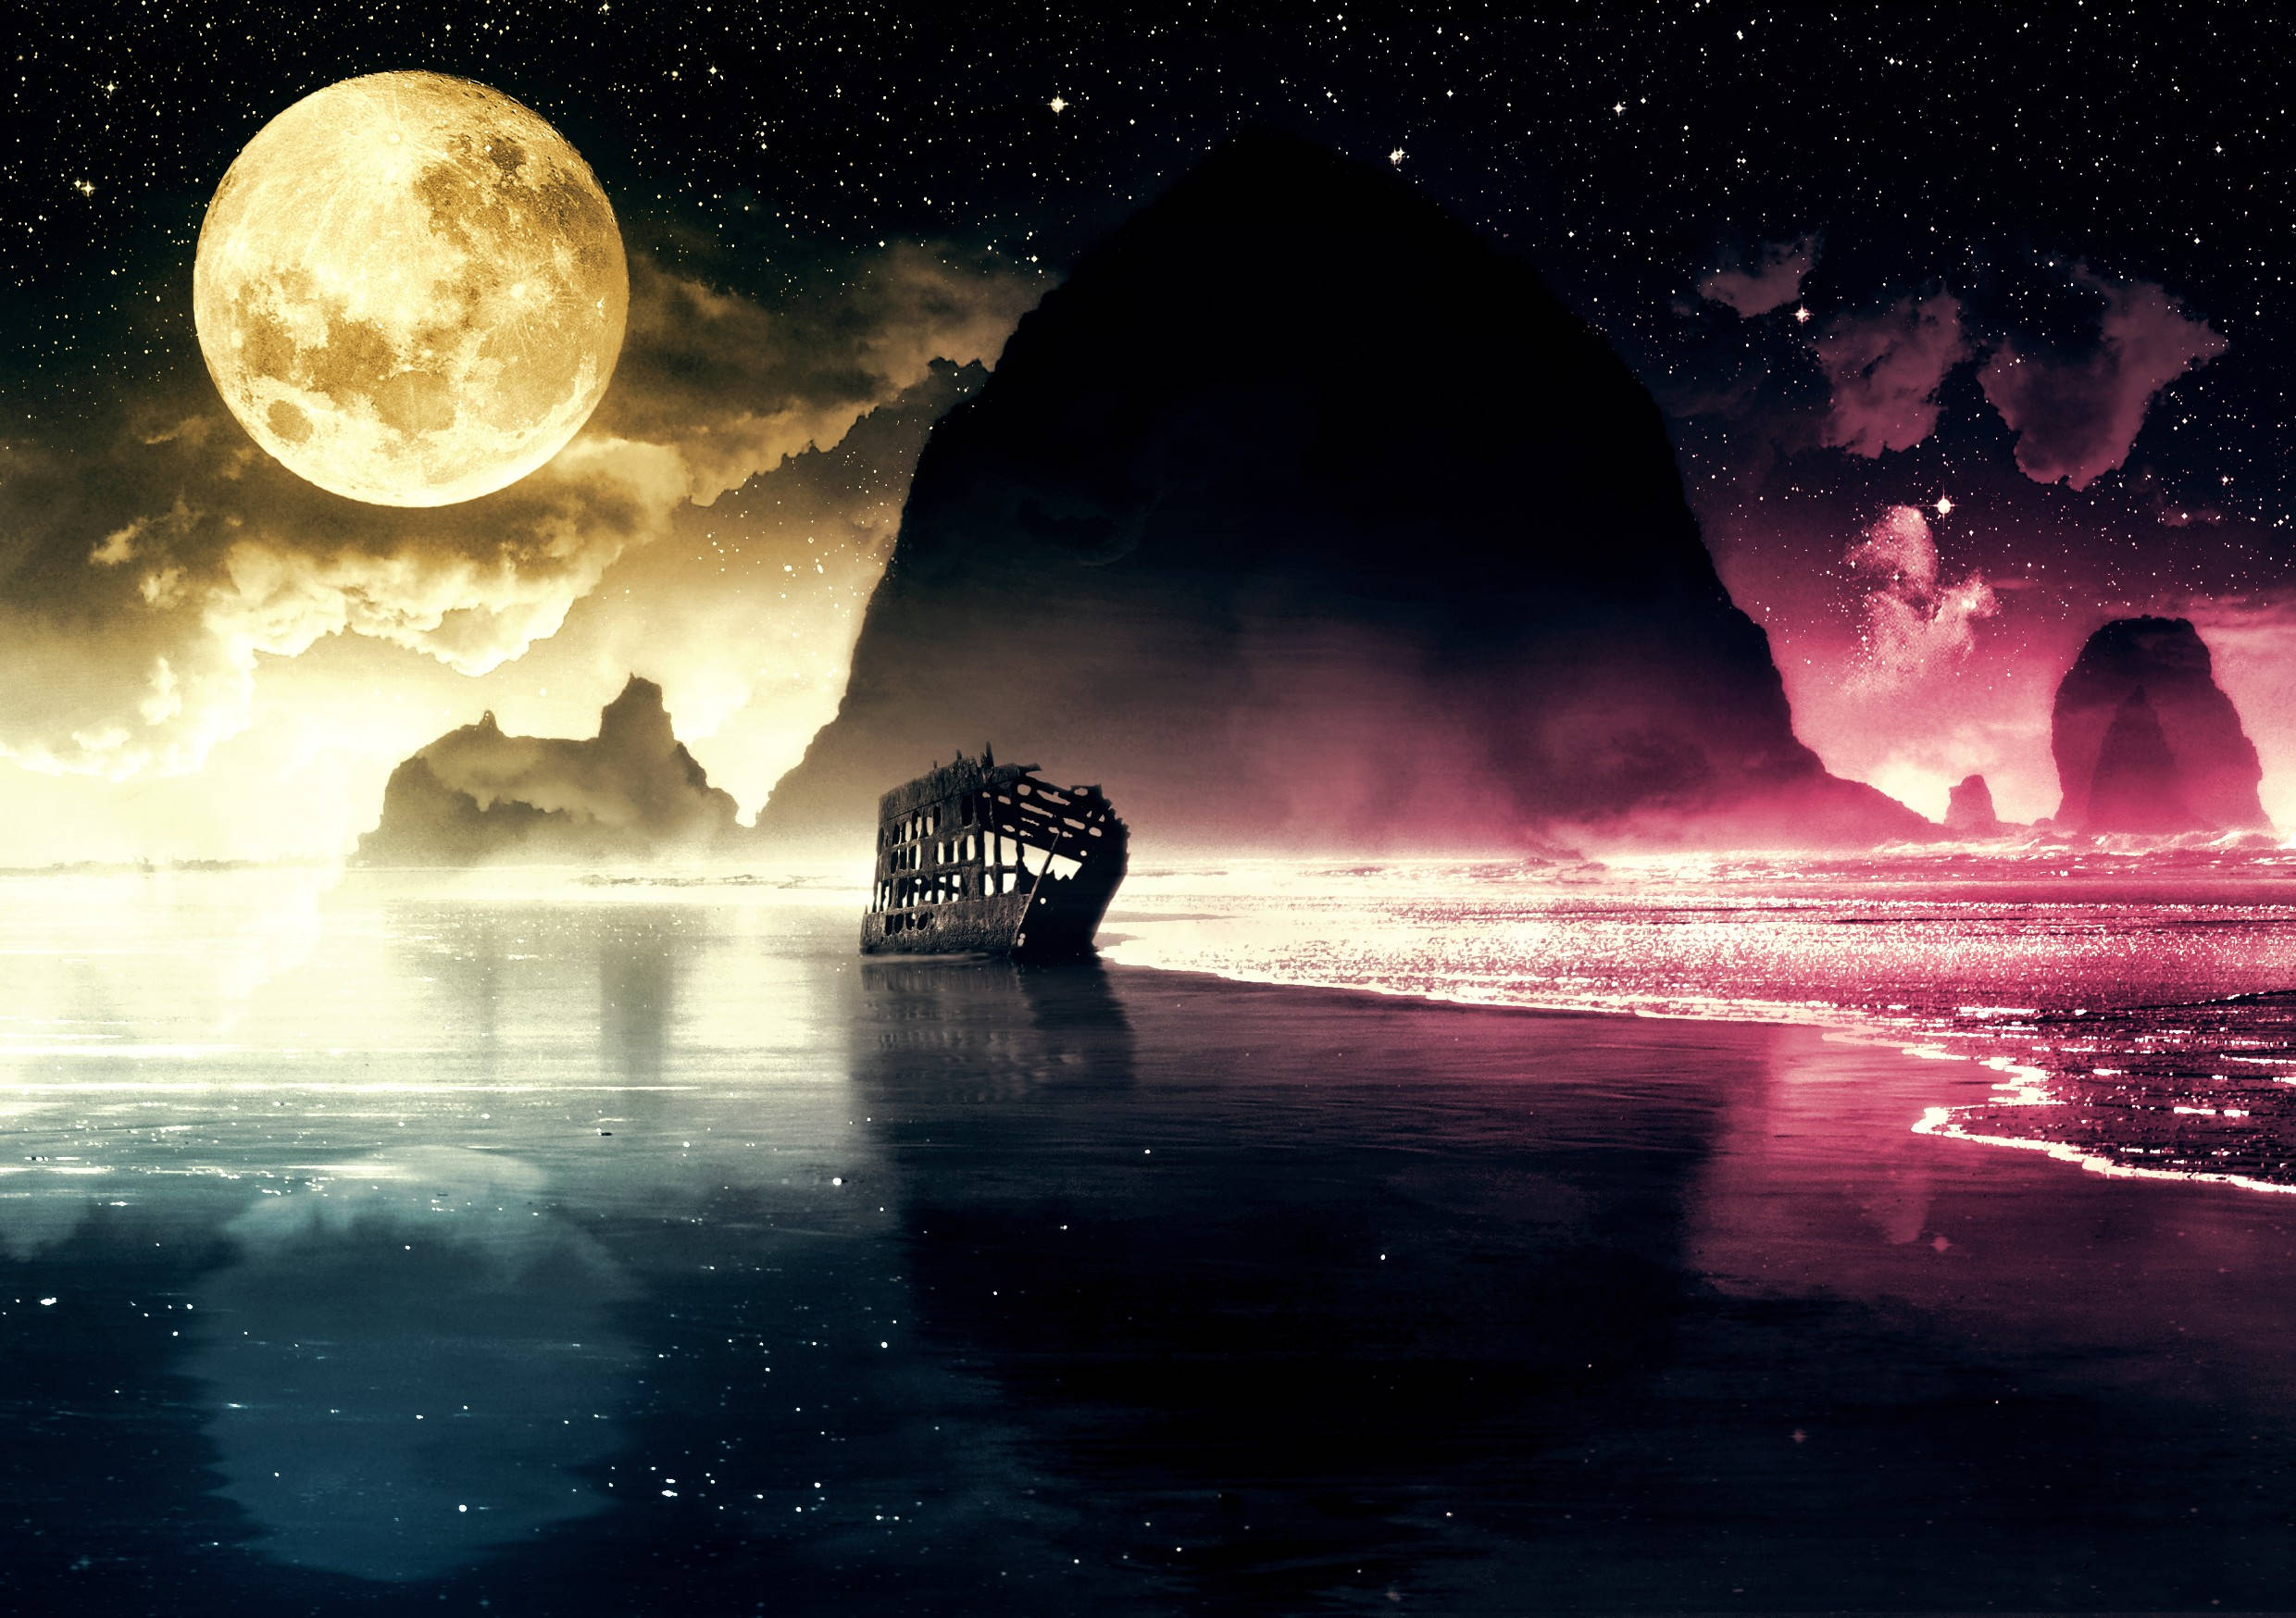 Заставка на телефон ночь. Лунный пейзаж. Ночное море. Красивые лунные пейзажи. Лунная ночь.